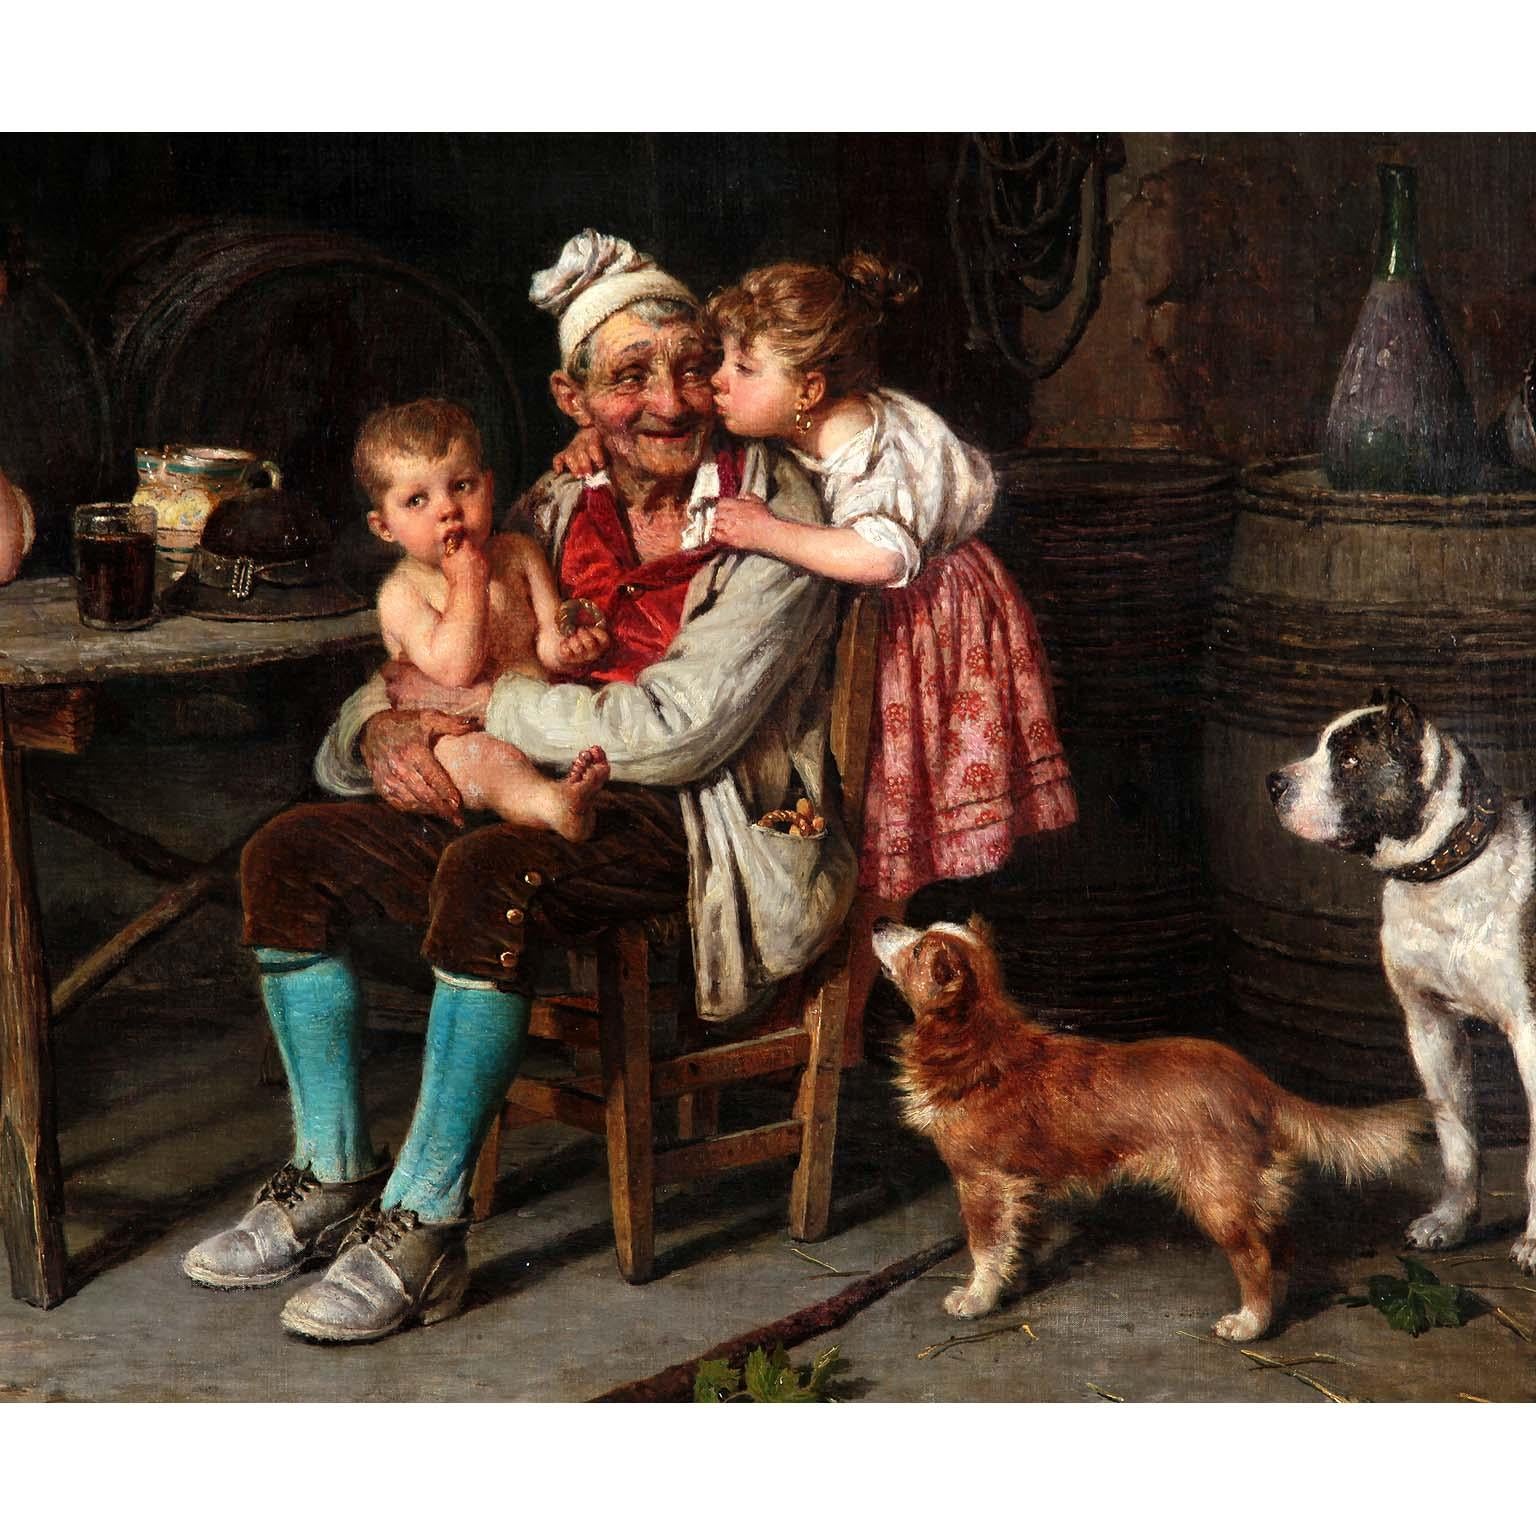 Country Huile sur toile du XIXe siècle de Federico Mazzotta, Grand-père. en vente